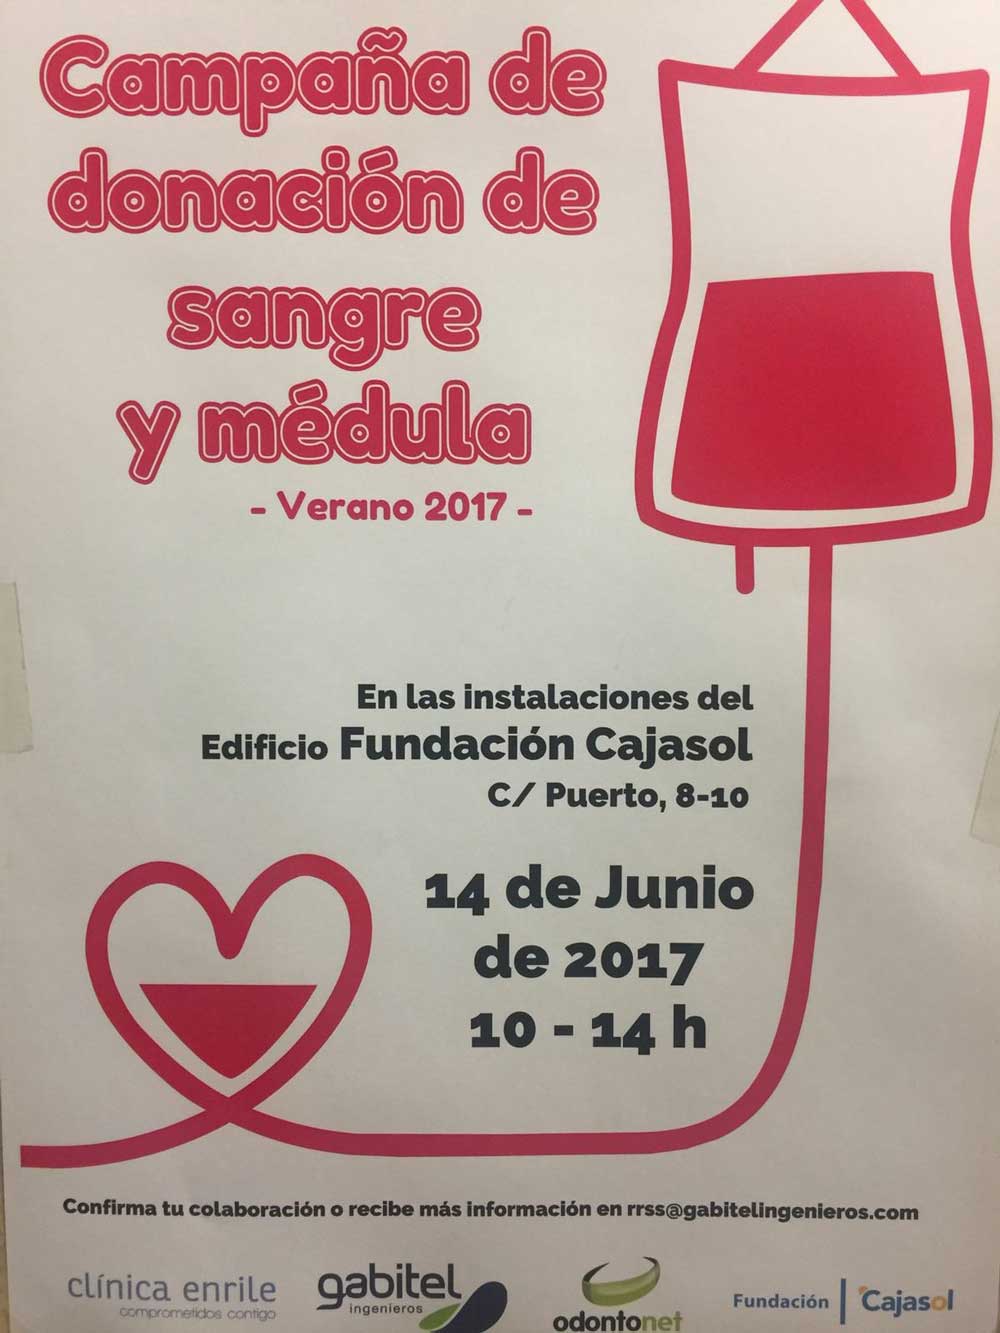 Cartel de la campaña de donación de sangre y médula 'Verano 2017' en Huelva